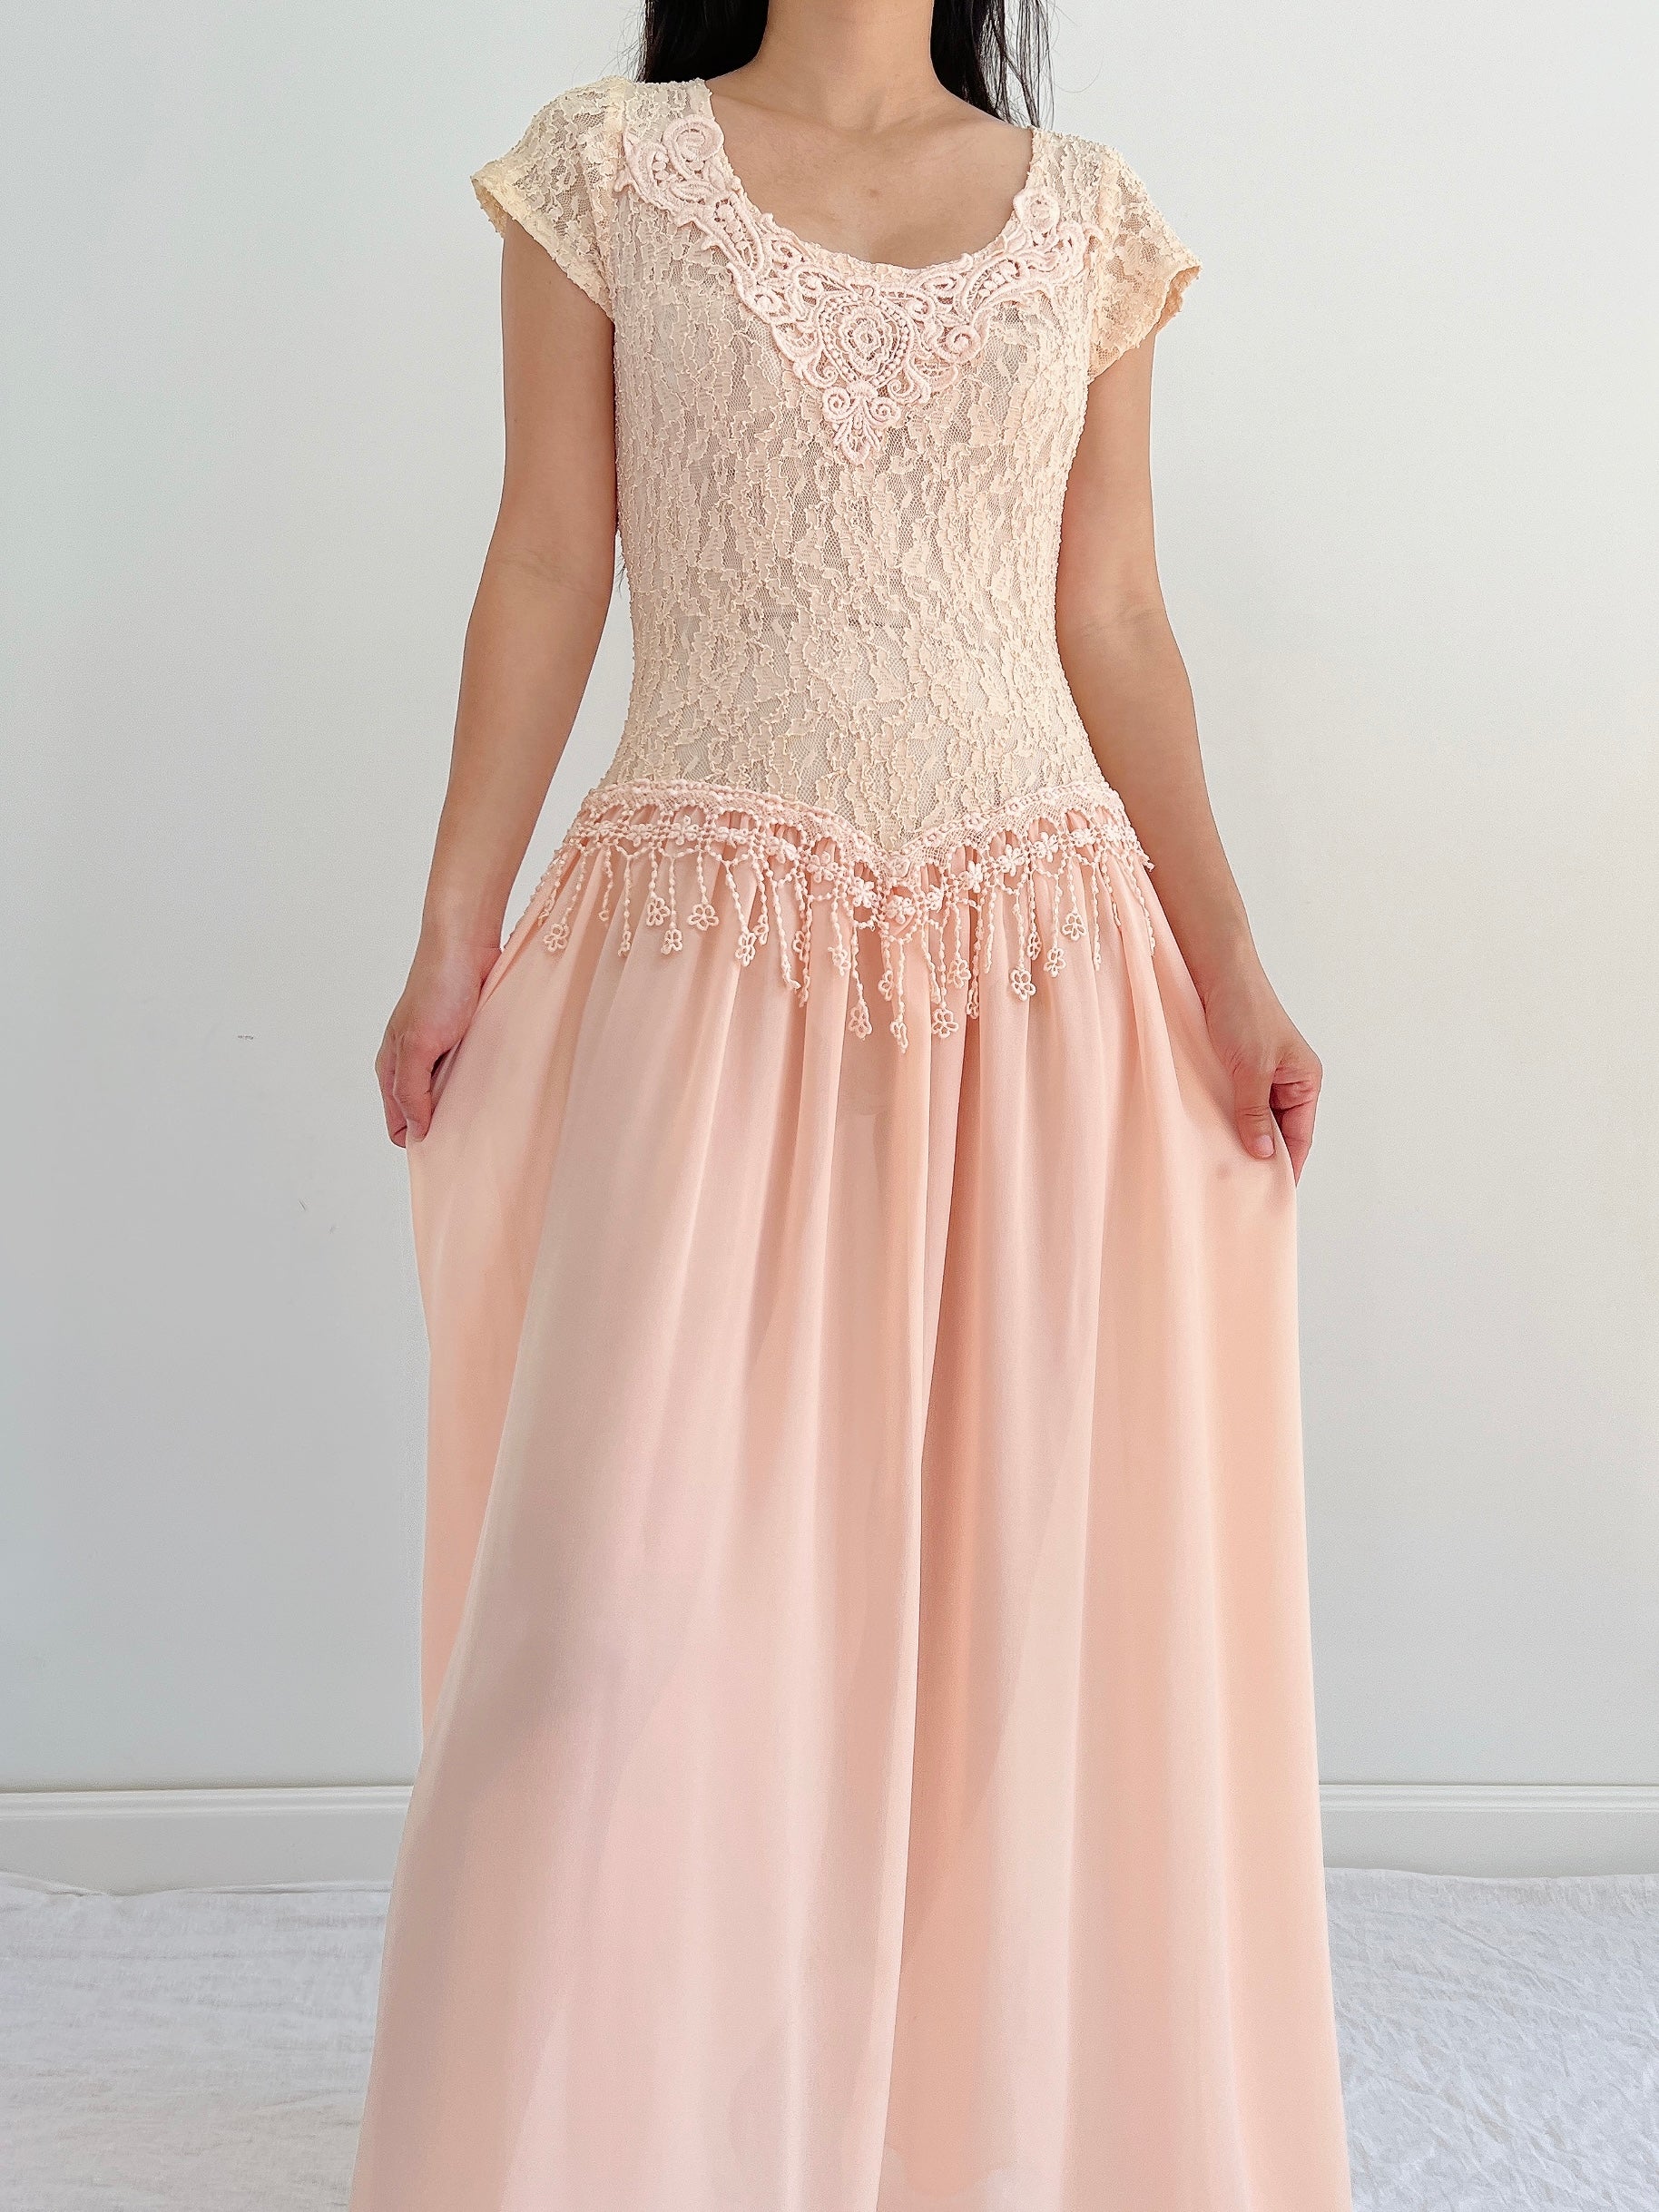 Vintage Lace and Chiffon Dress - S